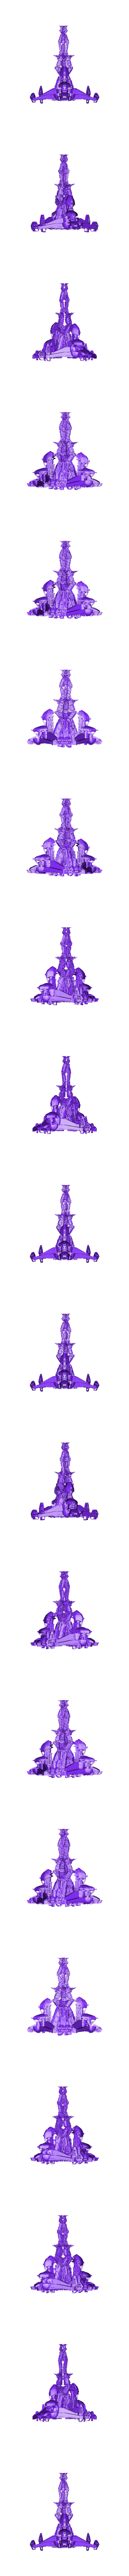 sci fi tower scull spine 5.obj Archivo OBJ Planeta tera former 8・Modelo de impresión 3D para descargar, aramar